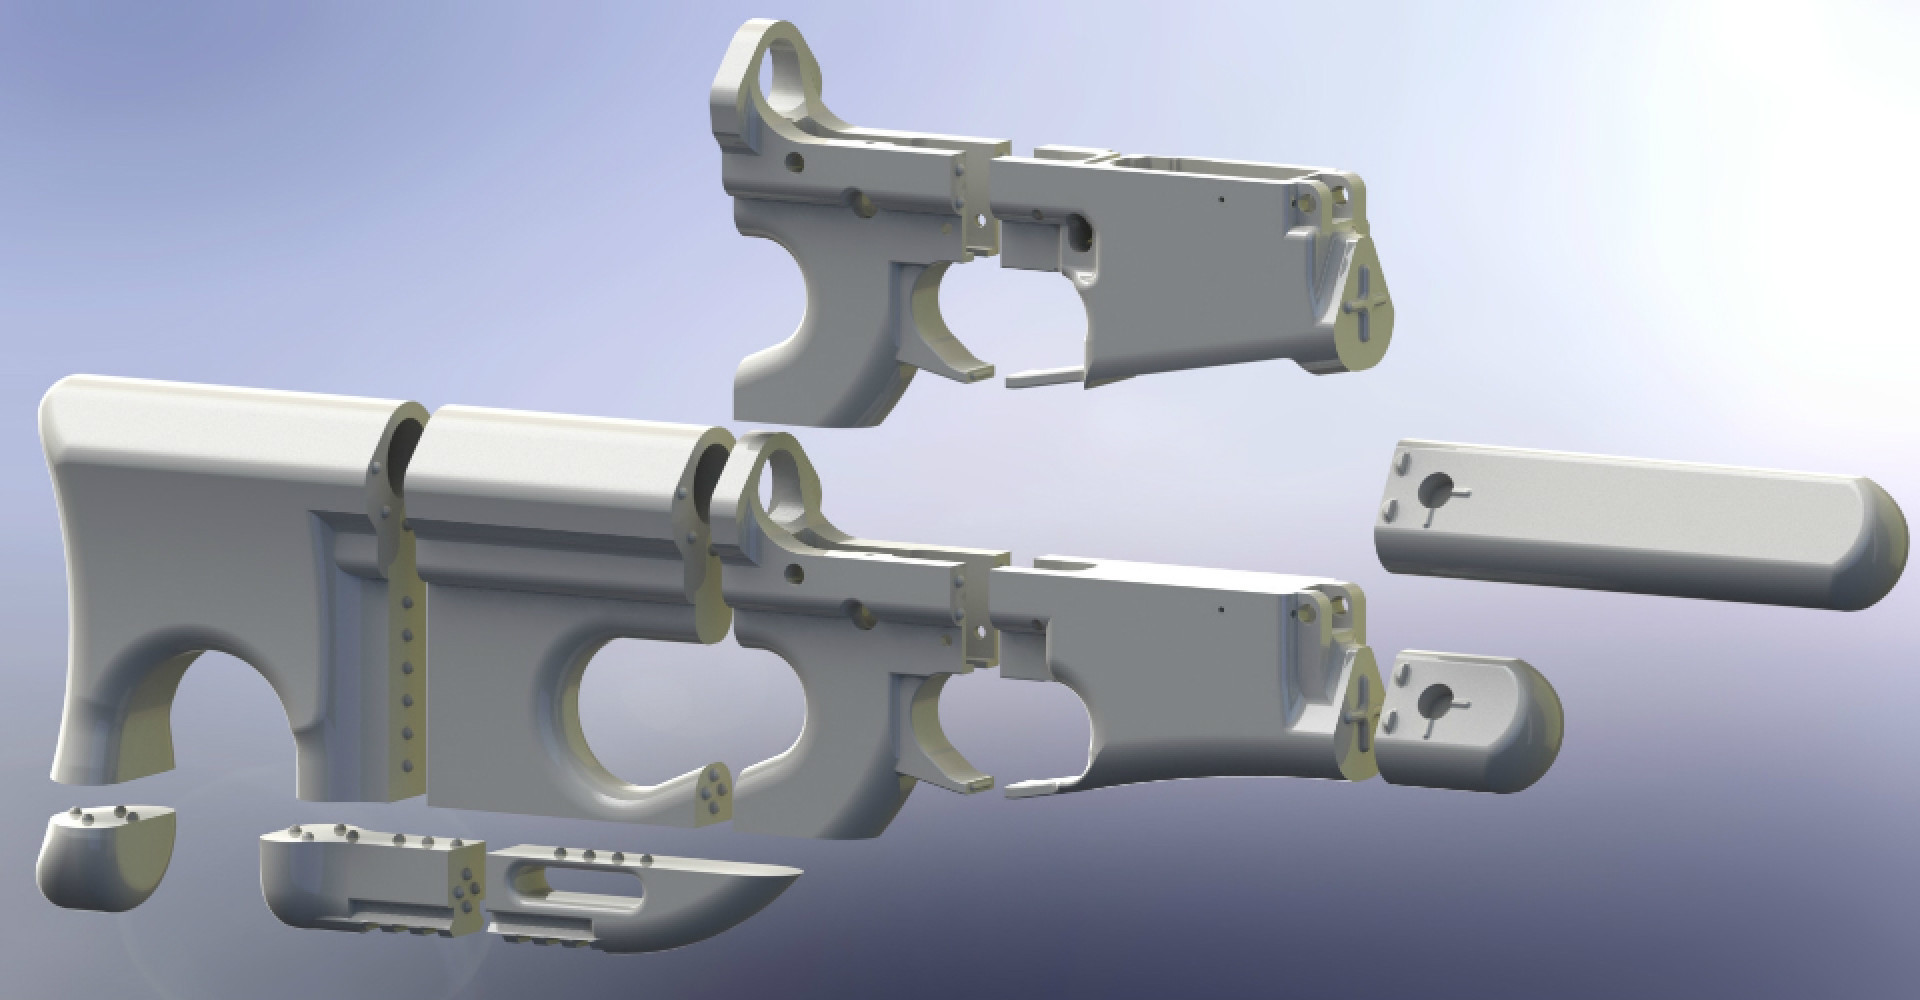 ΗΠΑ: Δικαστικό μπλόκο στην κατασκευή πλαστικών όπλων σε 3D εκτυπωτές